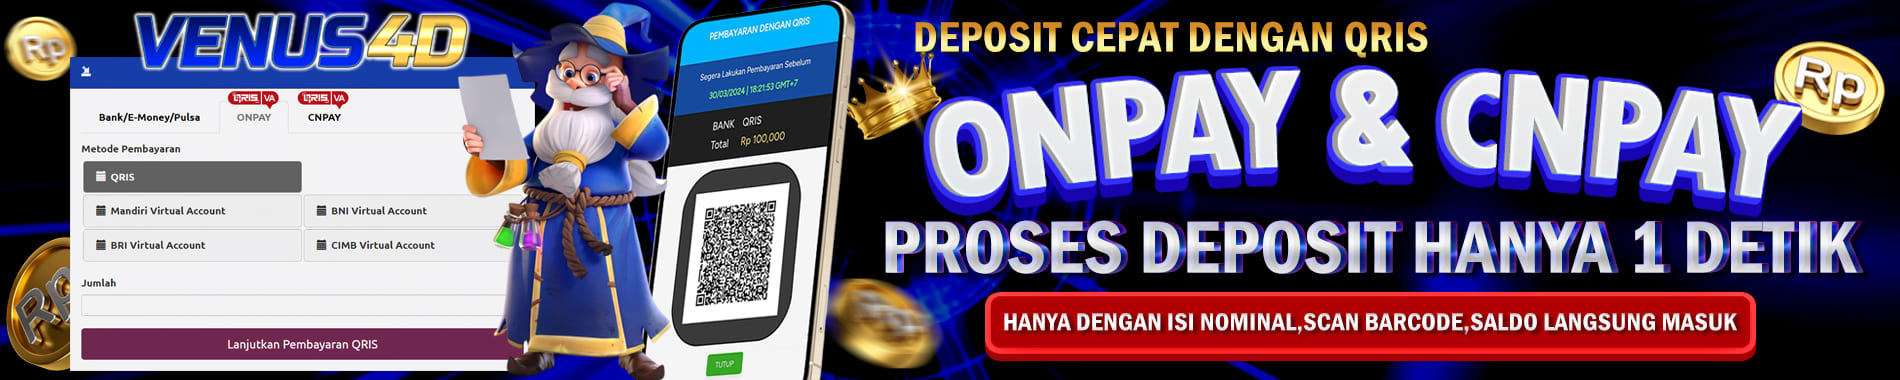 venus4d deposit cepat dengan onpay dan cnpay